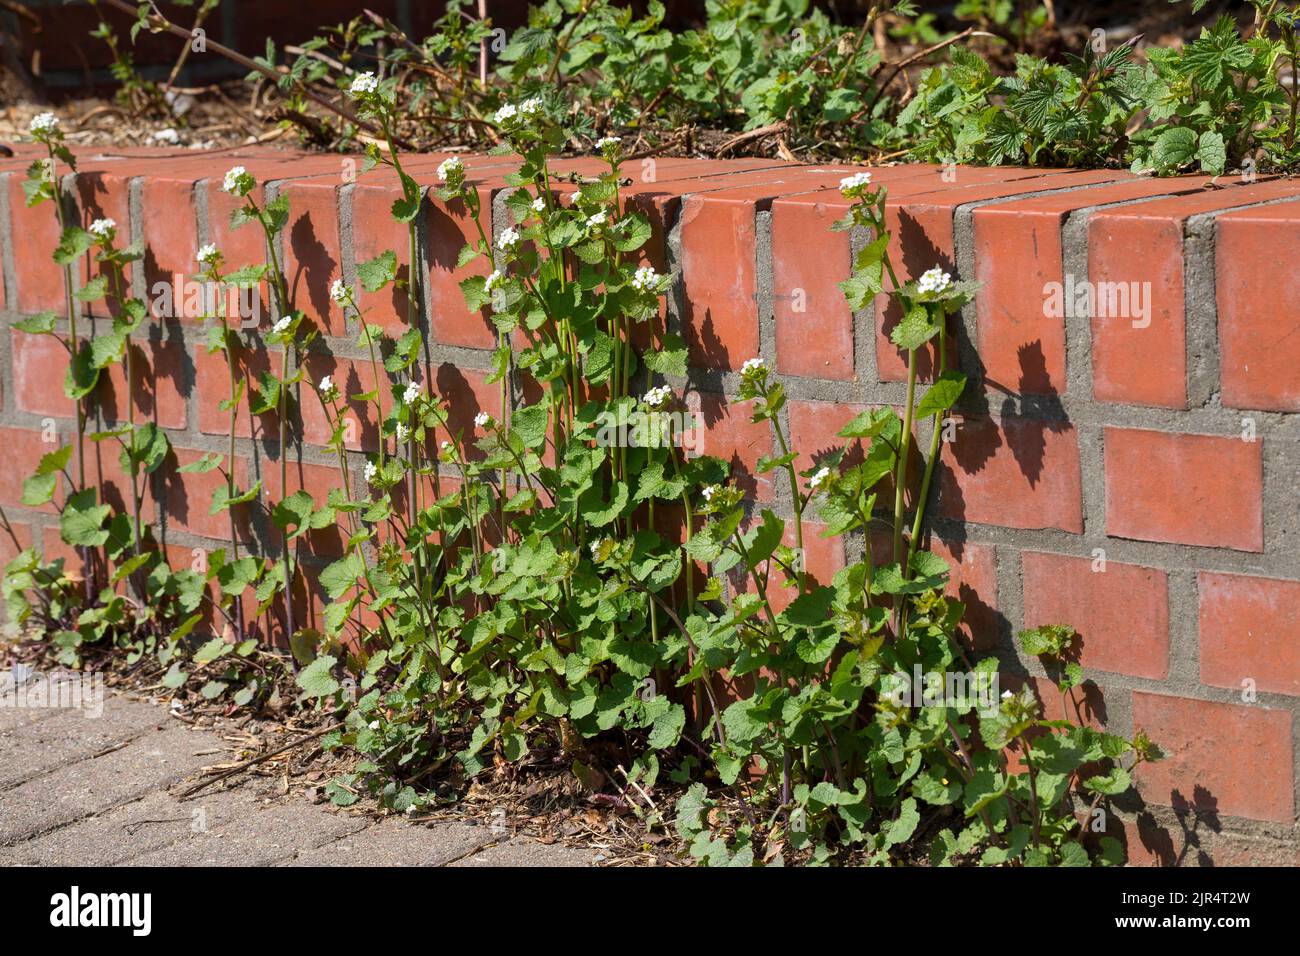 La moutarde à l'ail, l'ail de couverture, Jack-by-the-hedge (Alliaria petiolata), pousse dans un trou de pavage le long d'un mur, en Allemagne Banque D'Images